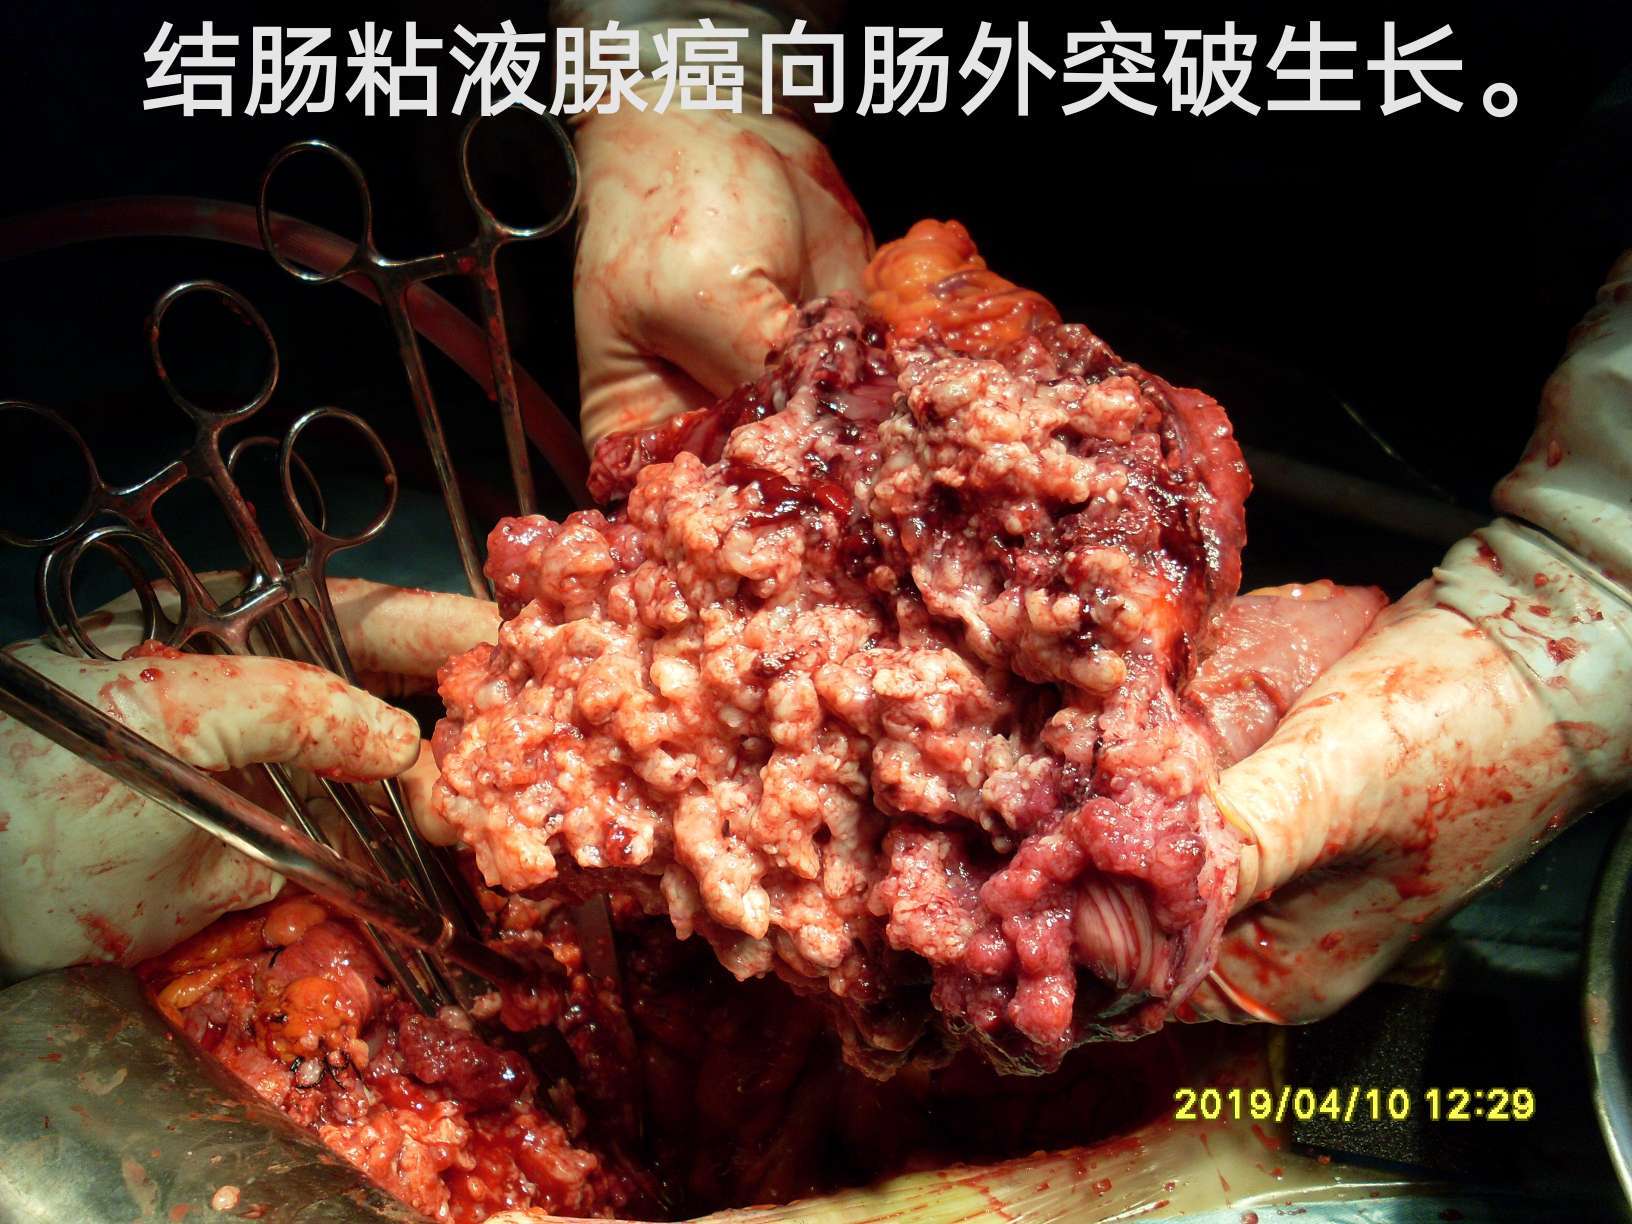 病例(40)--结肠肝曲粘液腺癌突破肠管向外生长!